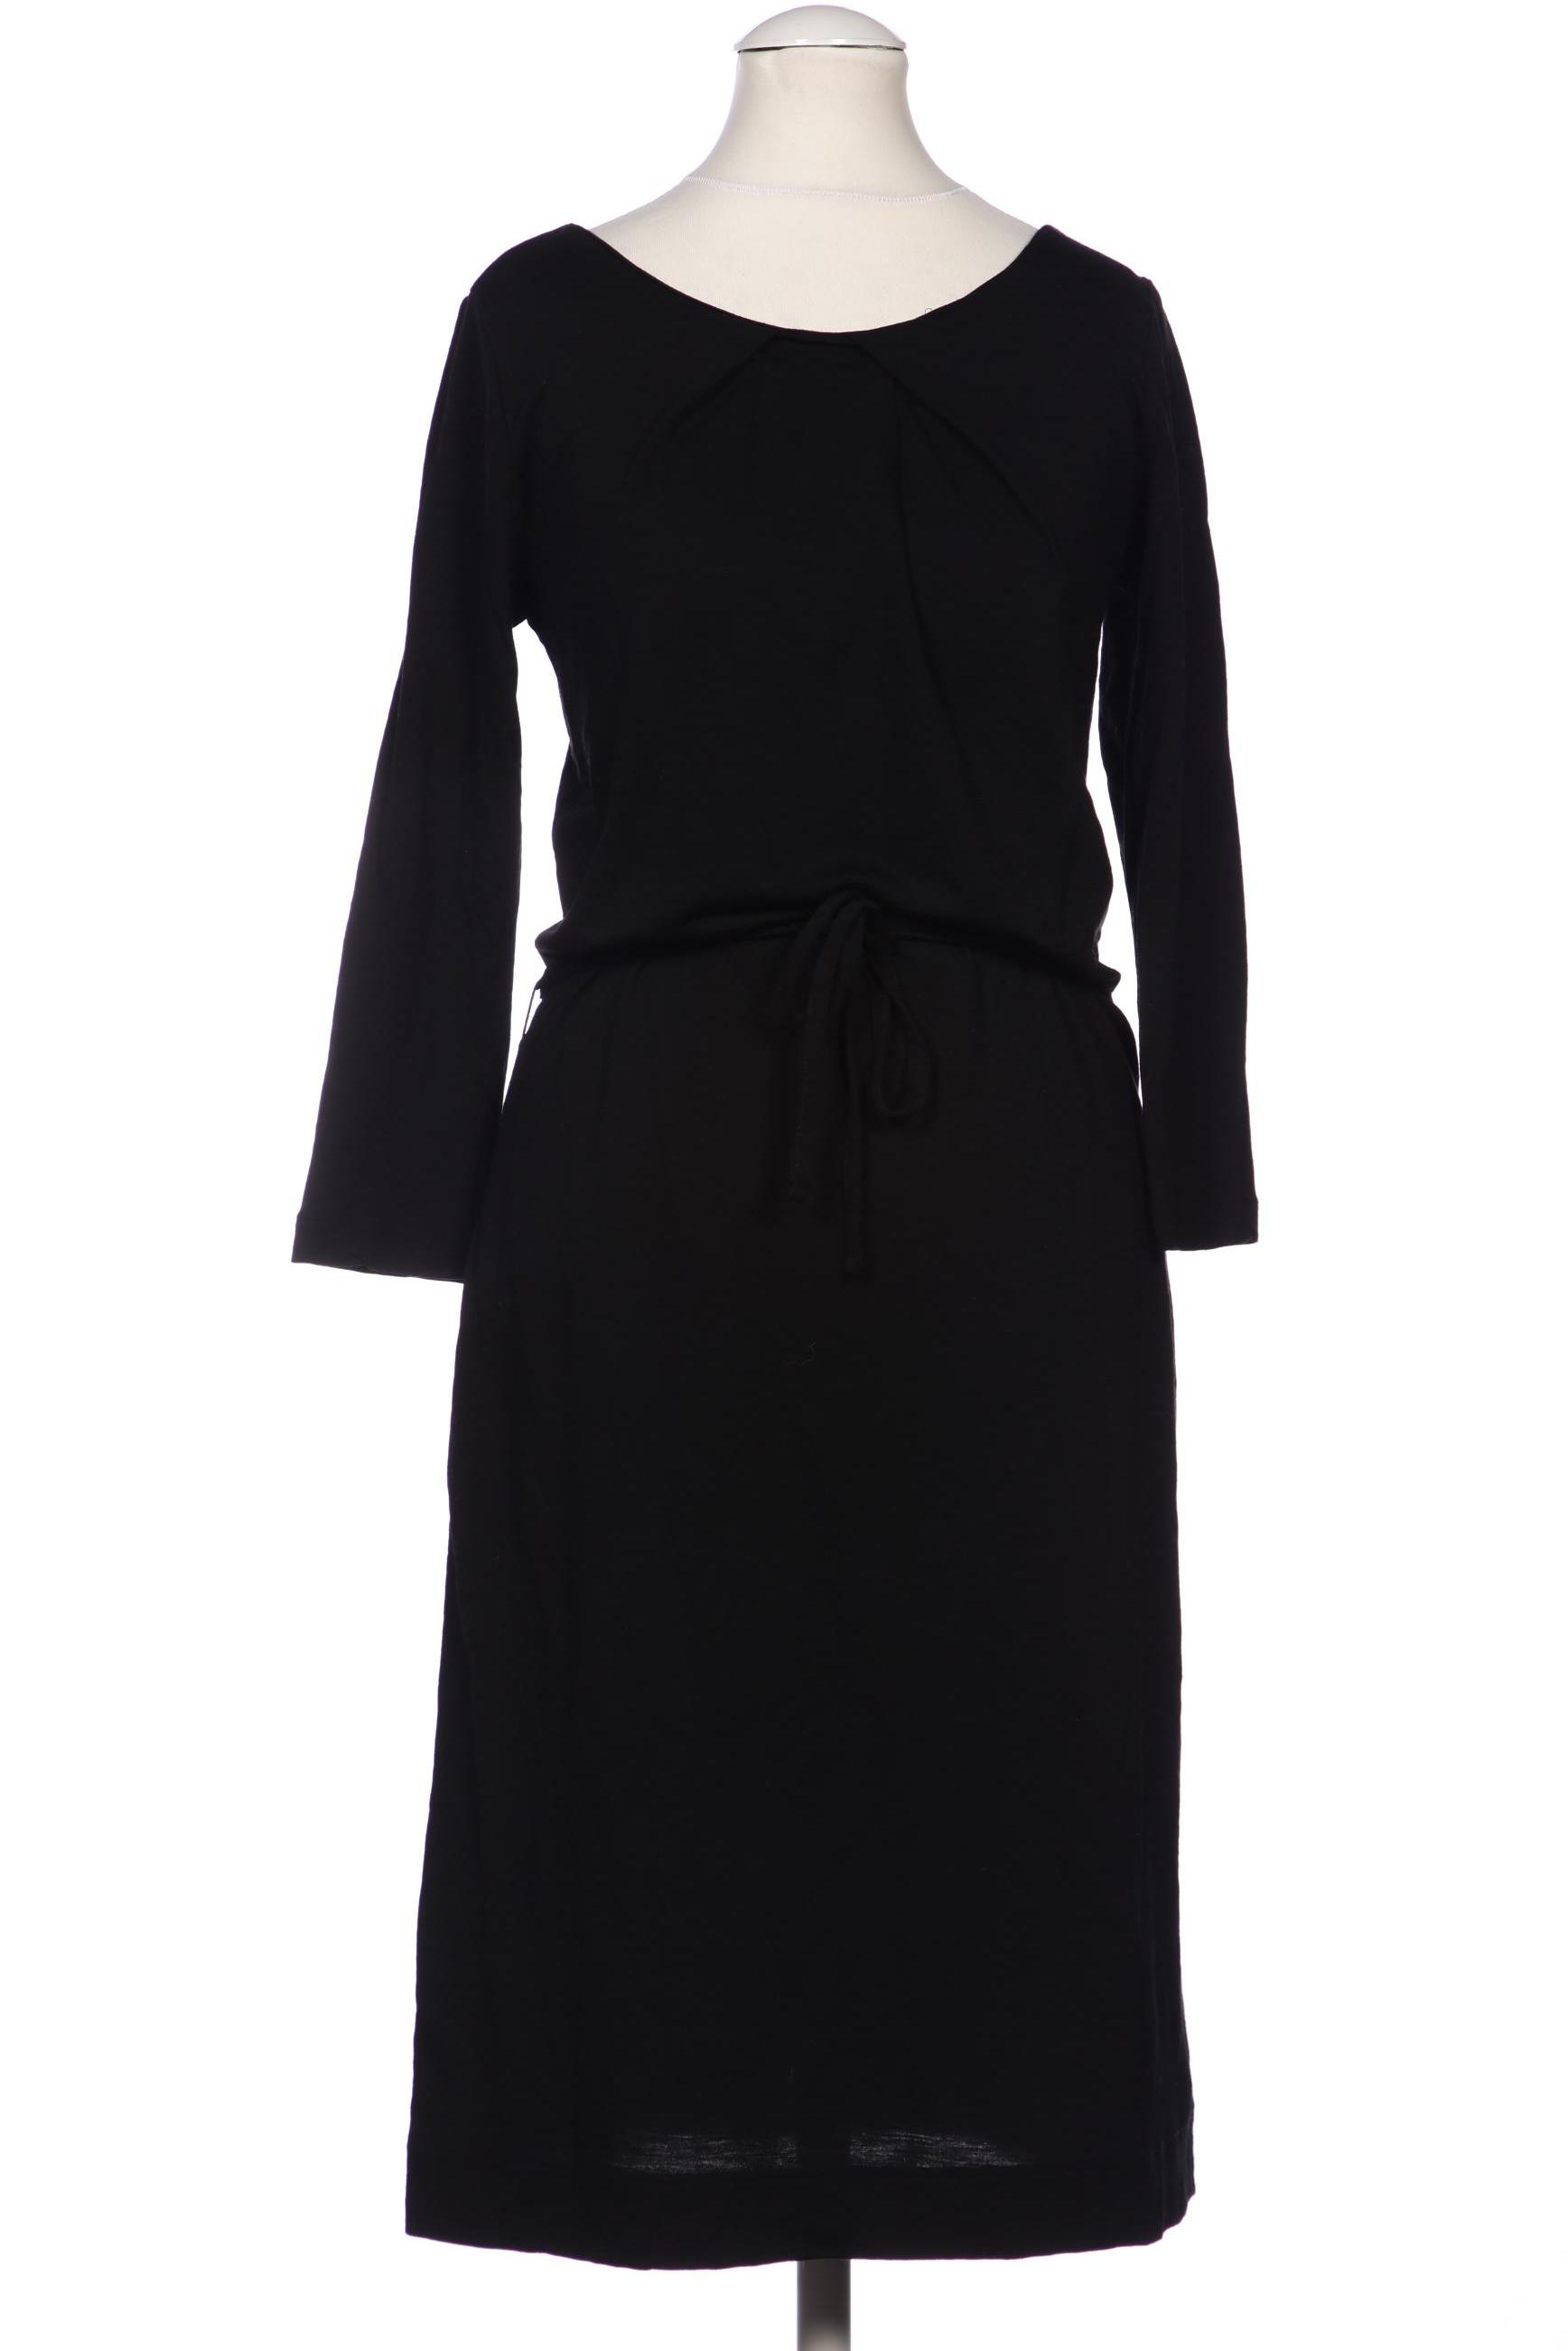 Lanius Damen Kleid, schwarz, Gr. 34 von LANIUS